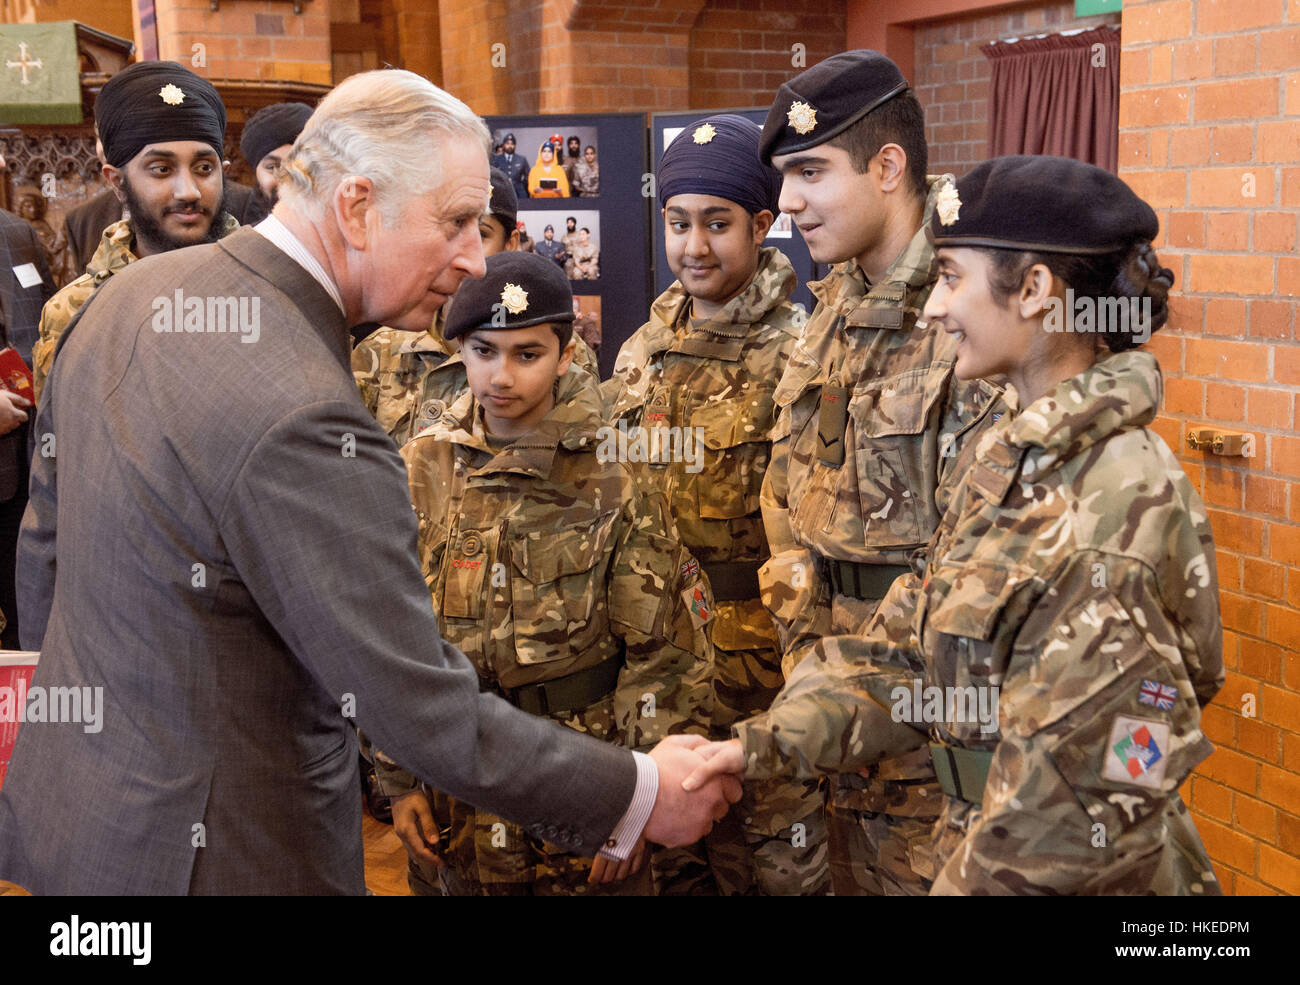 Der Prince Of Wales, Feldmarschall der British Army, trifft Armee-jüngstere Söhne, als er, über die laufende Arbeit zwischen der Armee und ethnischen Minderheiten in Leicester und in ganz Großbritannien während eines Besuchs in St Philip Church, Leicester erfährt. Stockfoto